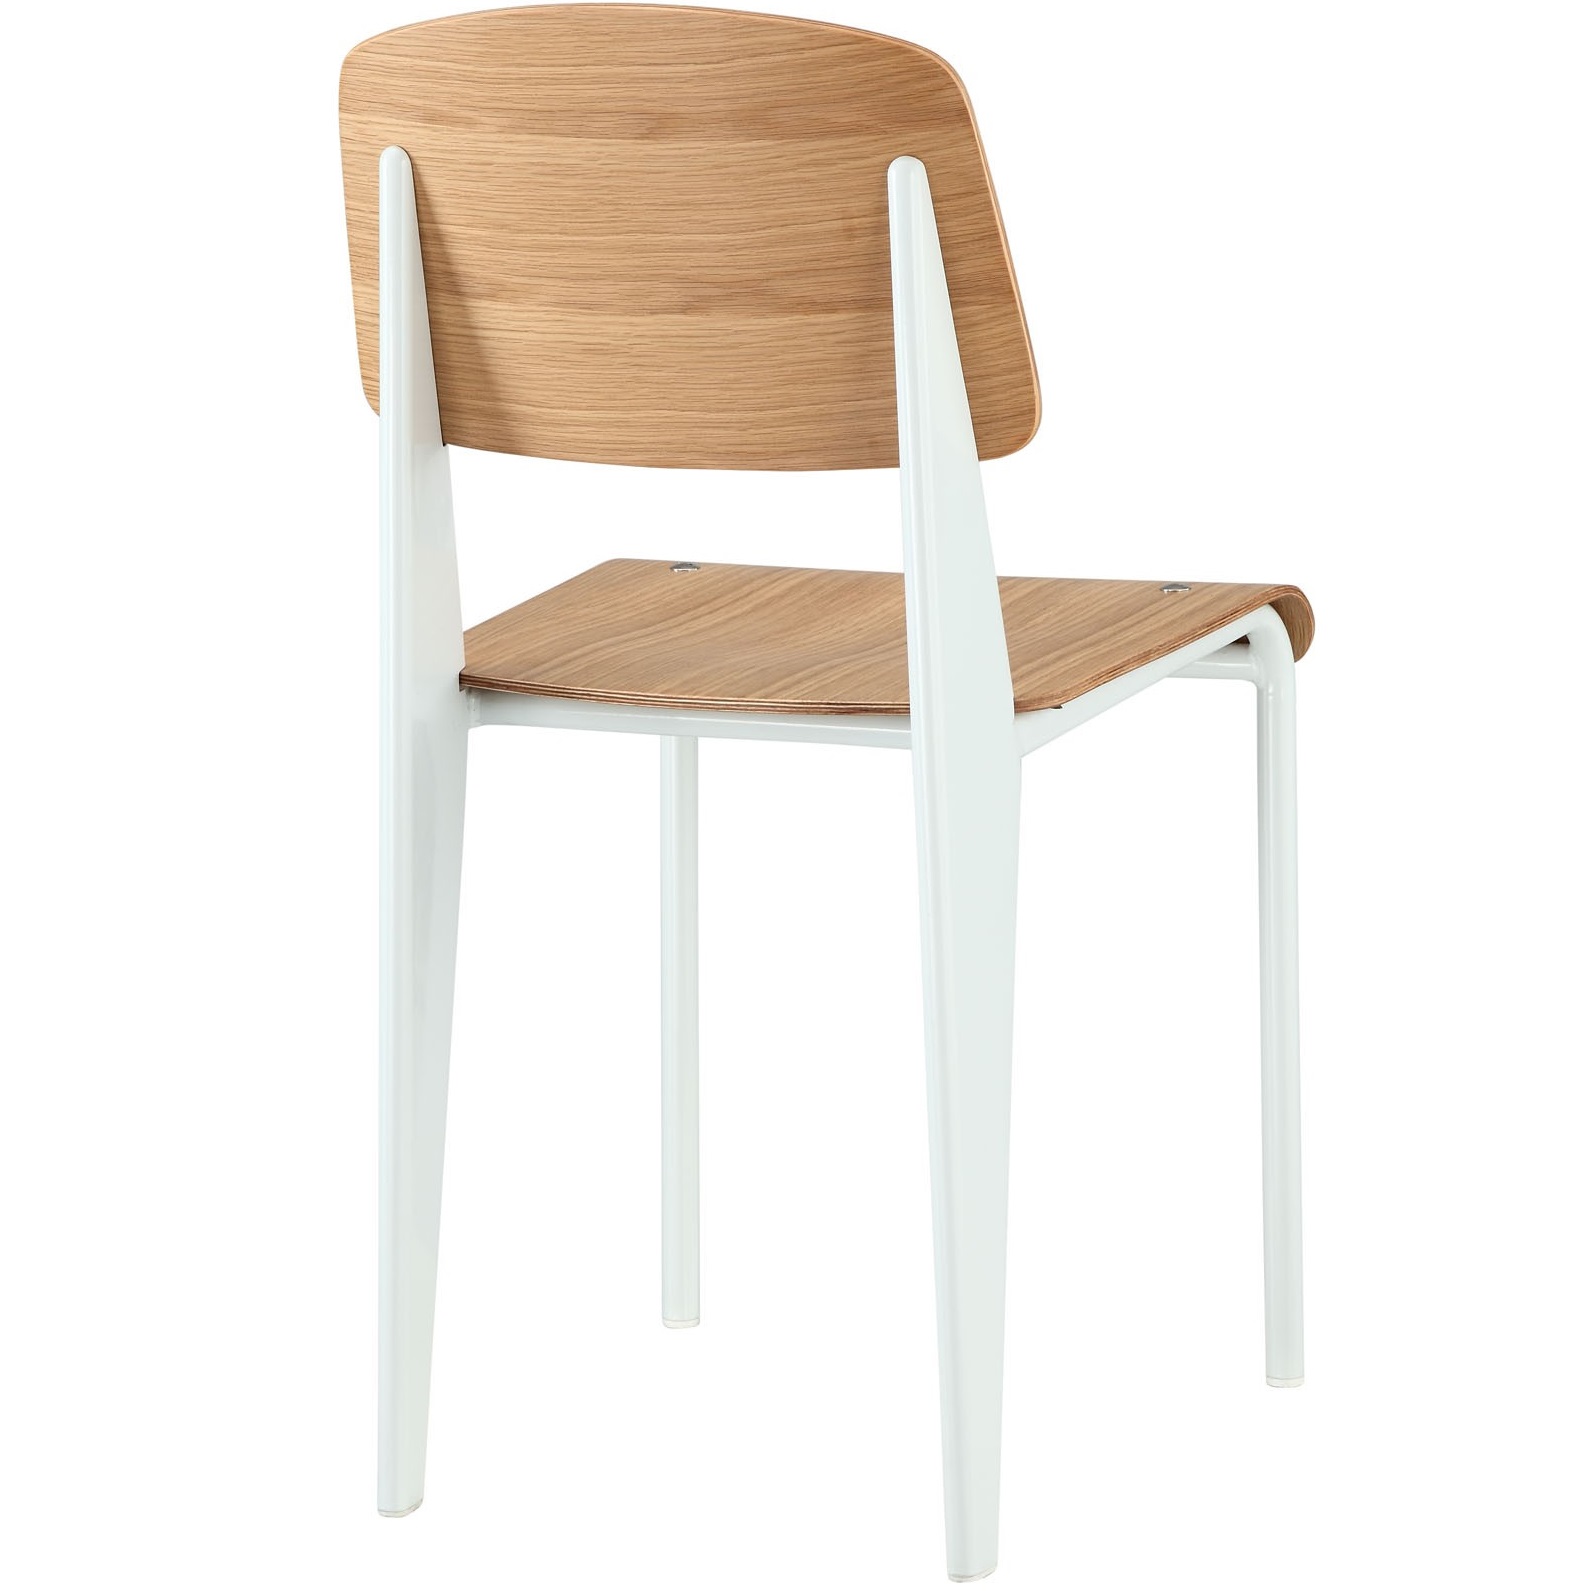 Standard Chair Bentwood (Beech Wood), Metal 420 x 410 x 820 mm Price: 1.600.000 VND Ghế khung sắt sơn tĩnh điện, mặt vân gỗ, theo phong cách Industrial, sử dụng trong các không gian nhà hàng, quán cà phê, cũng có thể dùng làm ghế ăn hay bất cứ không gian nào mà bạn thích! Màu sắc: Khung sơn trắng, mặt vân gỗ và khung sơn đen, mặt vân gỗ.